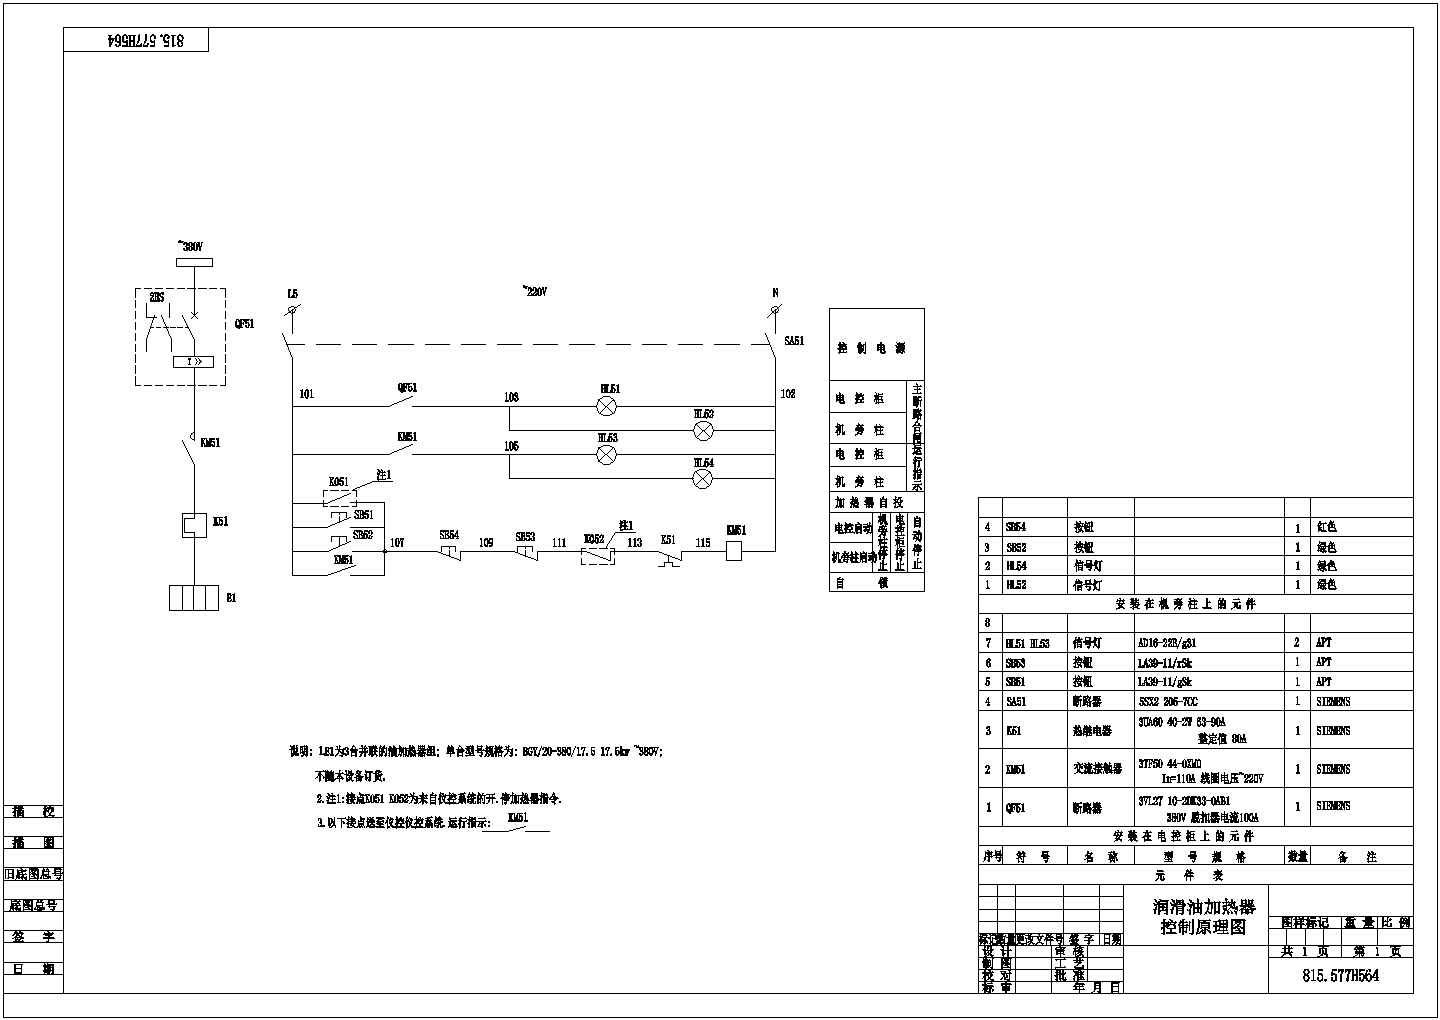 【安徽省】低压电器控制原理图CAD图纸